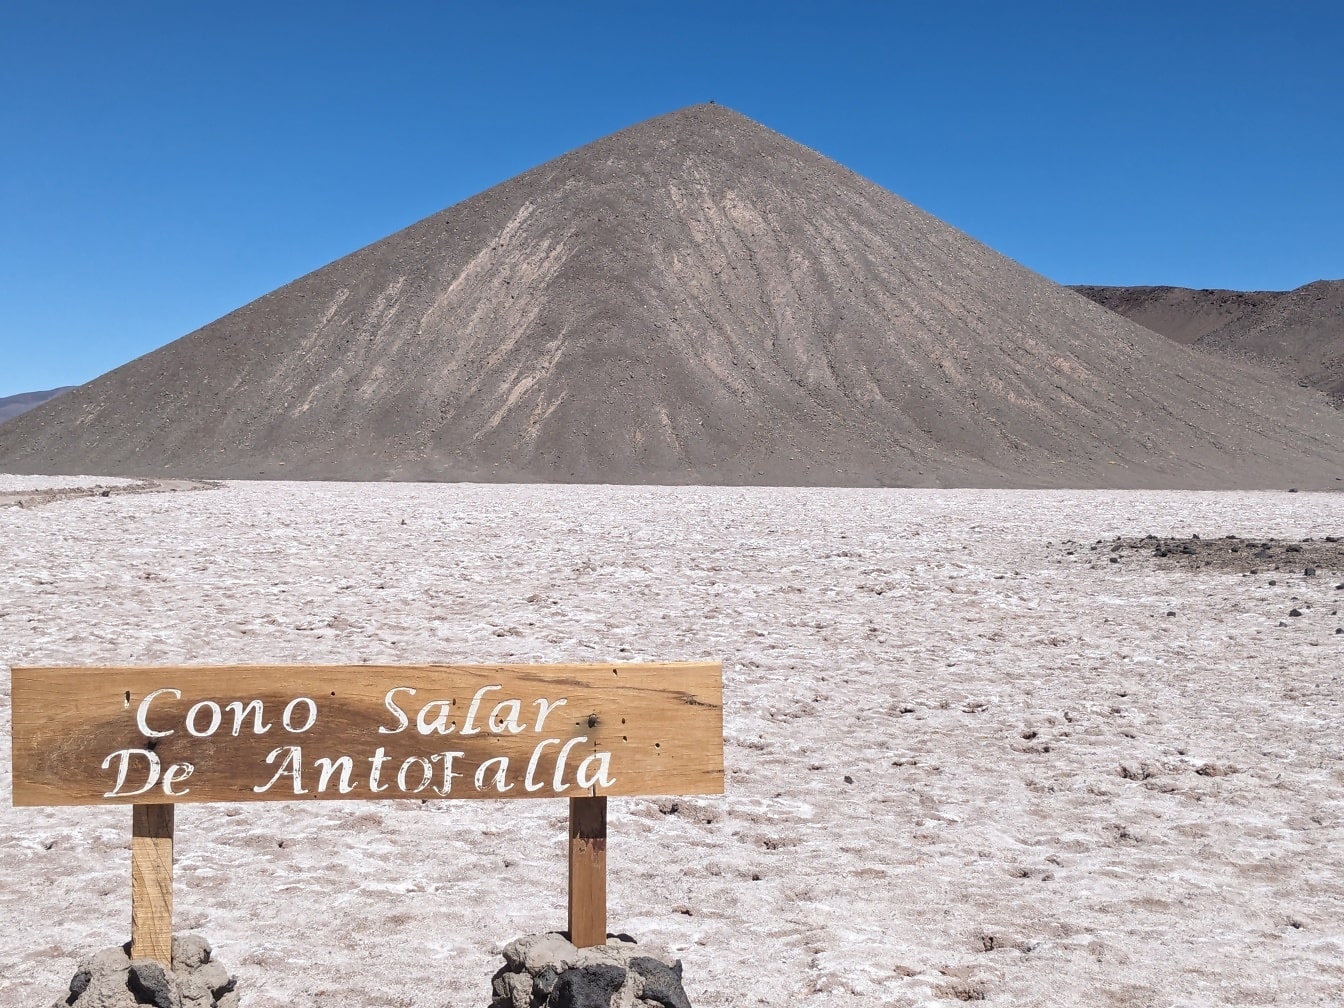 Salar de Antofalla là một sa mạc muối nằm ở Puna de Atacama ở Argentina